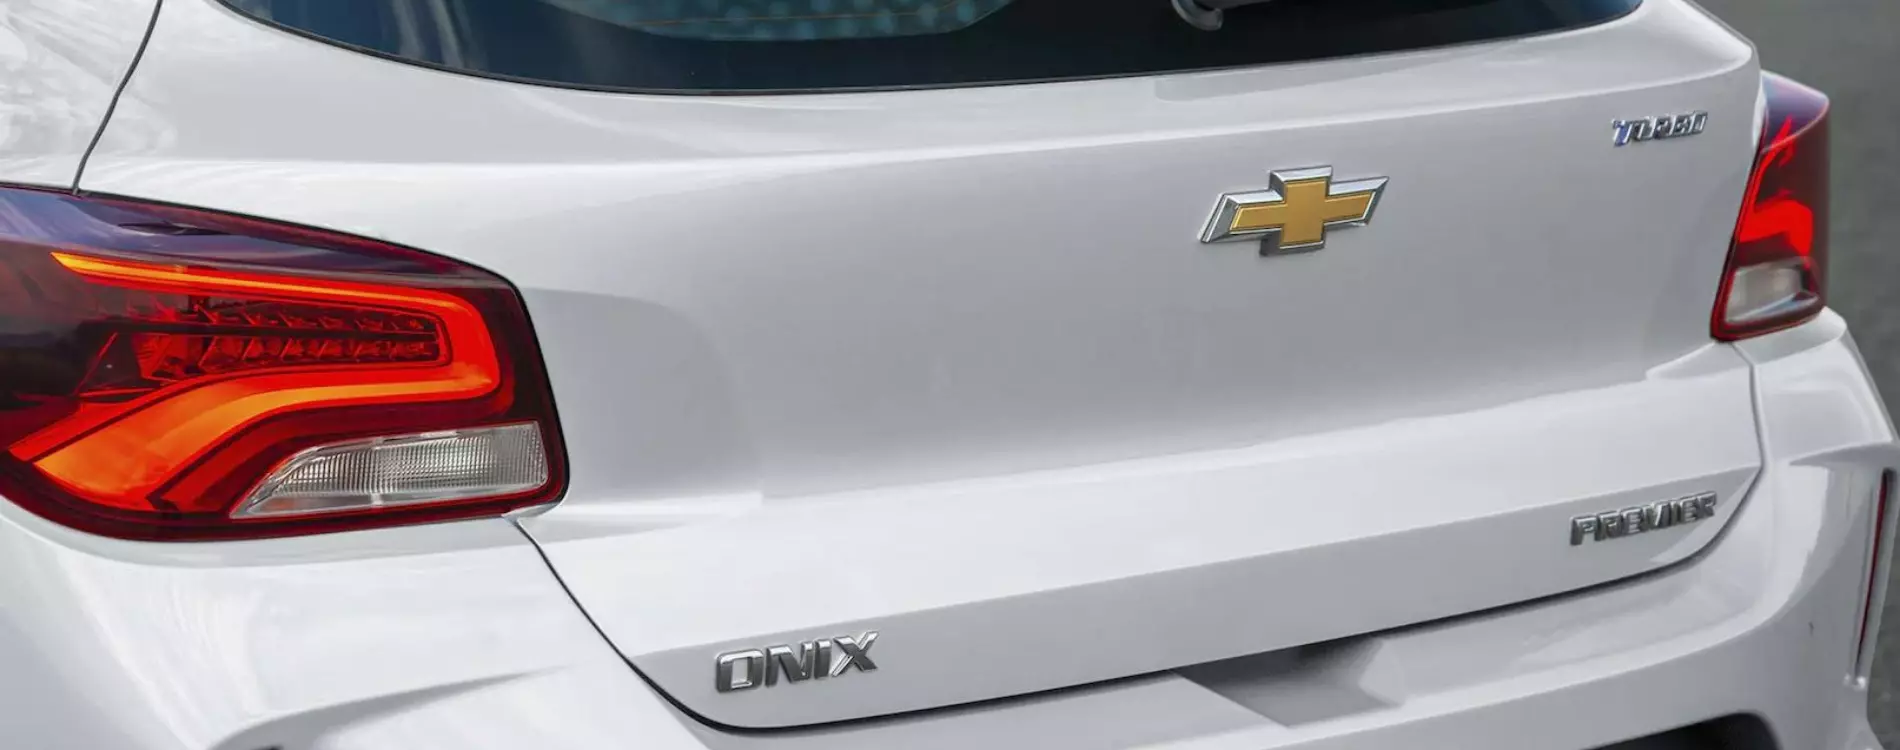 Onix 2022 carro hatch com design moderno